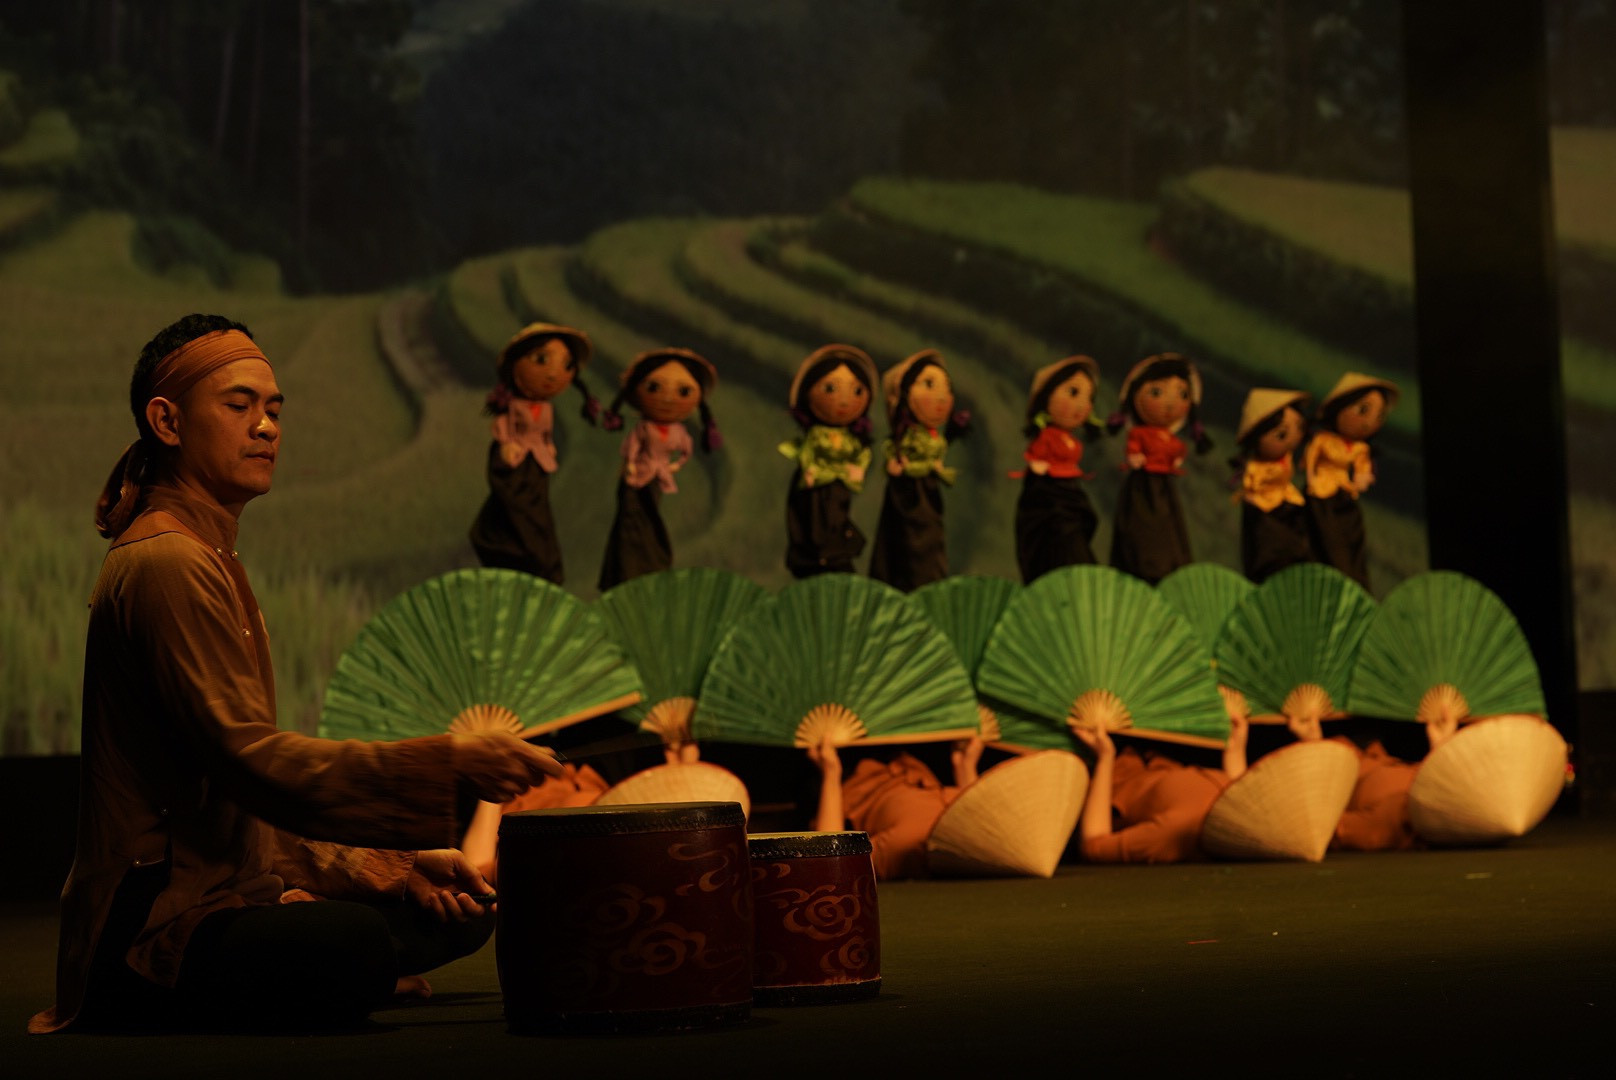 Múa rối Việt Nam sẽ biểu diễn tại Lễ khai mạc Đại hội Sân khấu thế giới